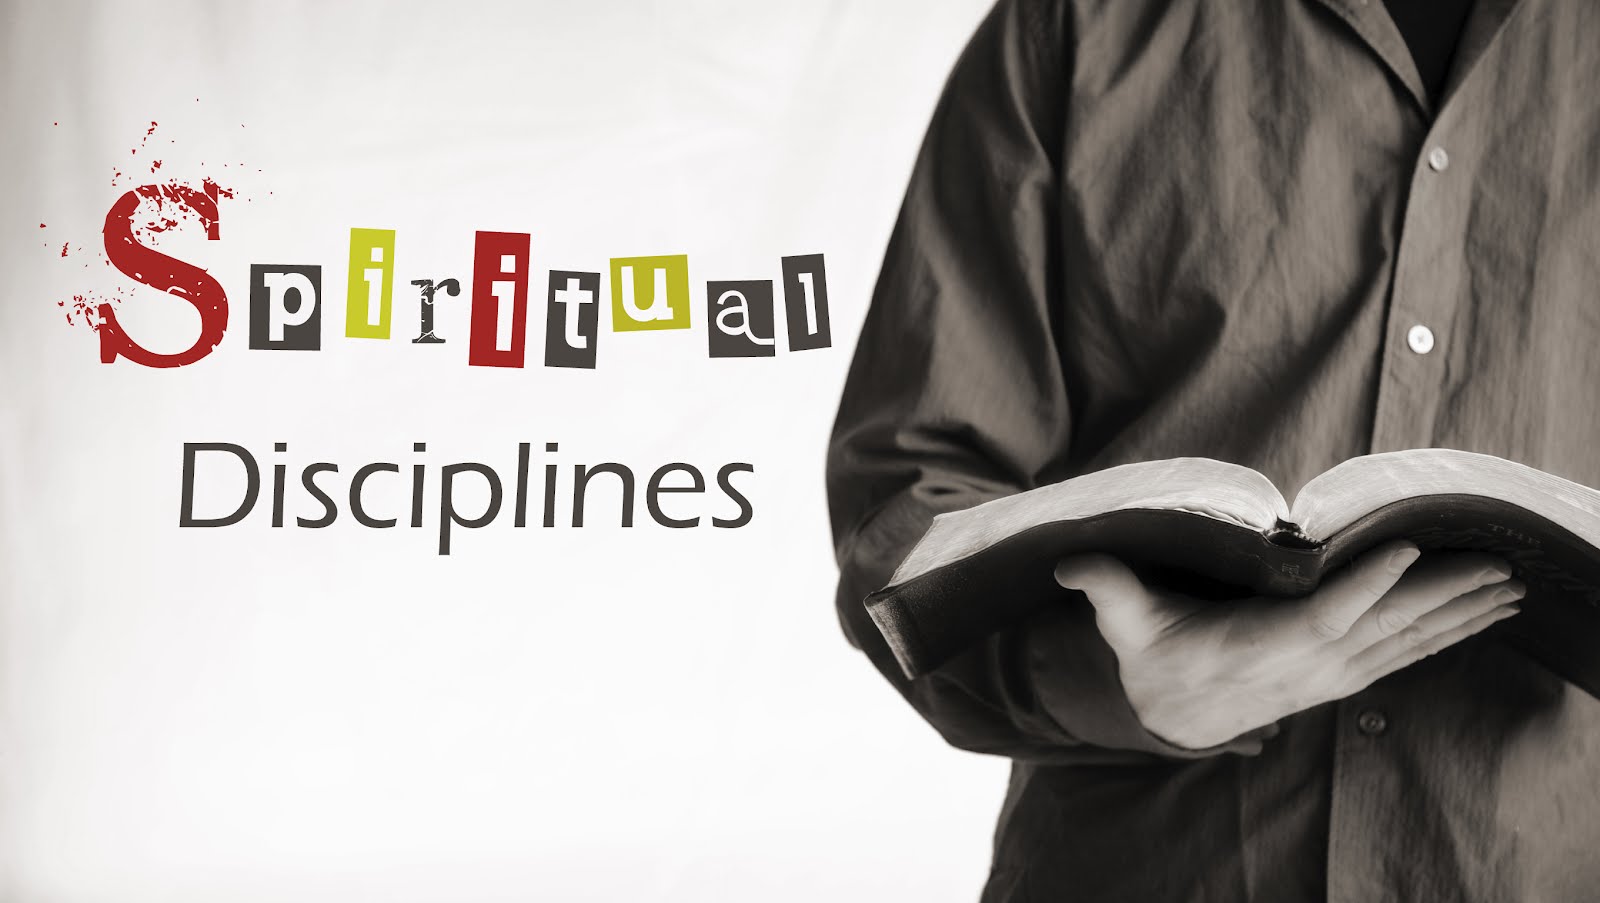 Spiritualdisciplines